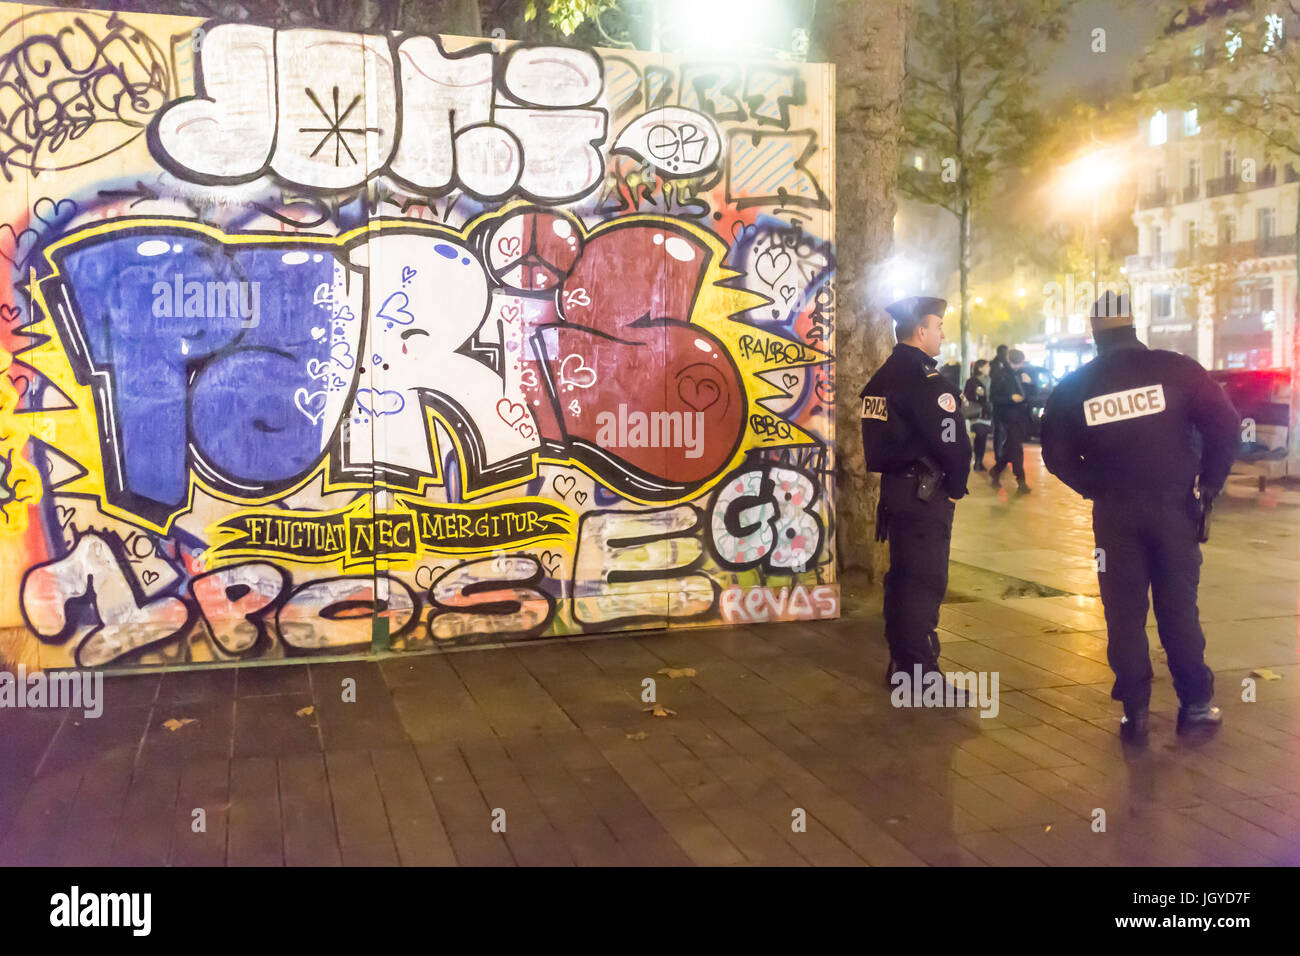 2 Polizisten in der Nähe des Graff. Spontane Hommage an die Opfer der Terroranschläge in Paris, den 13. November 2015. Stockfoto